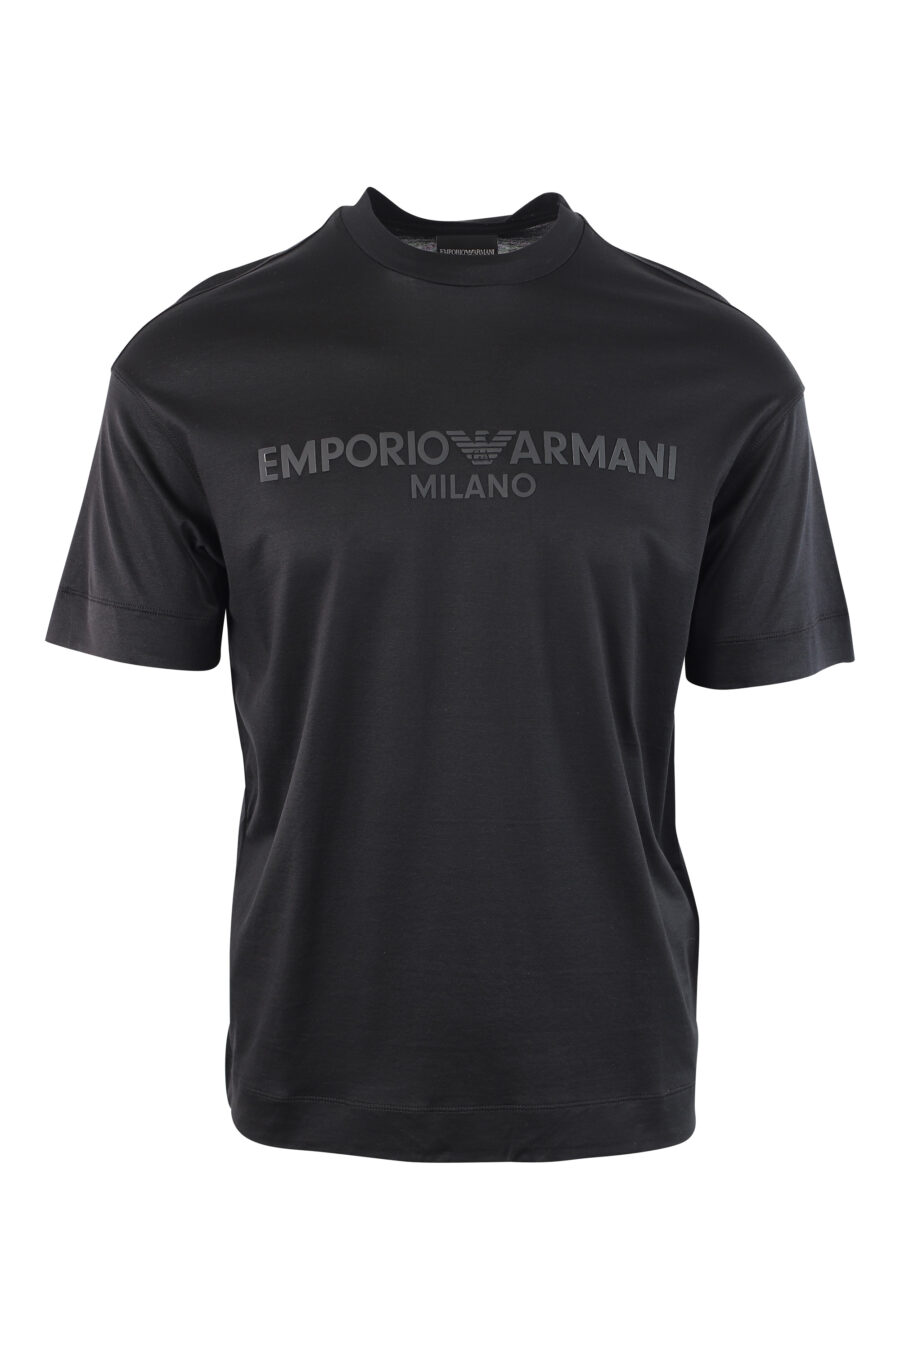 Camiseta negra con logo monocromático centrado - IMG 3785